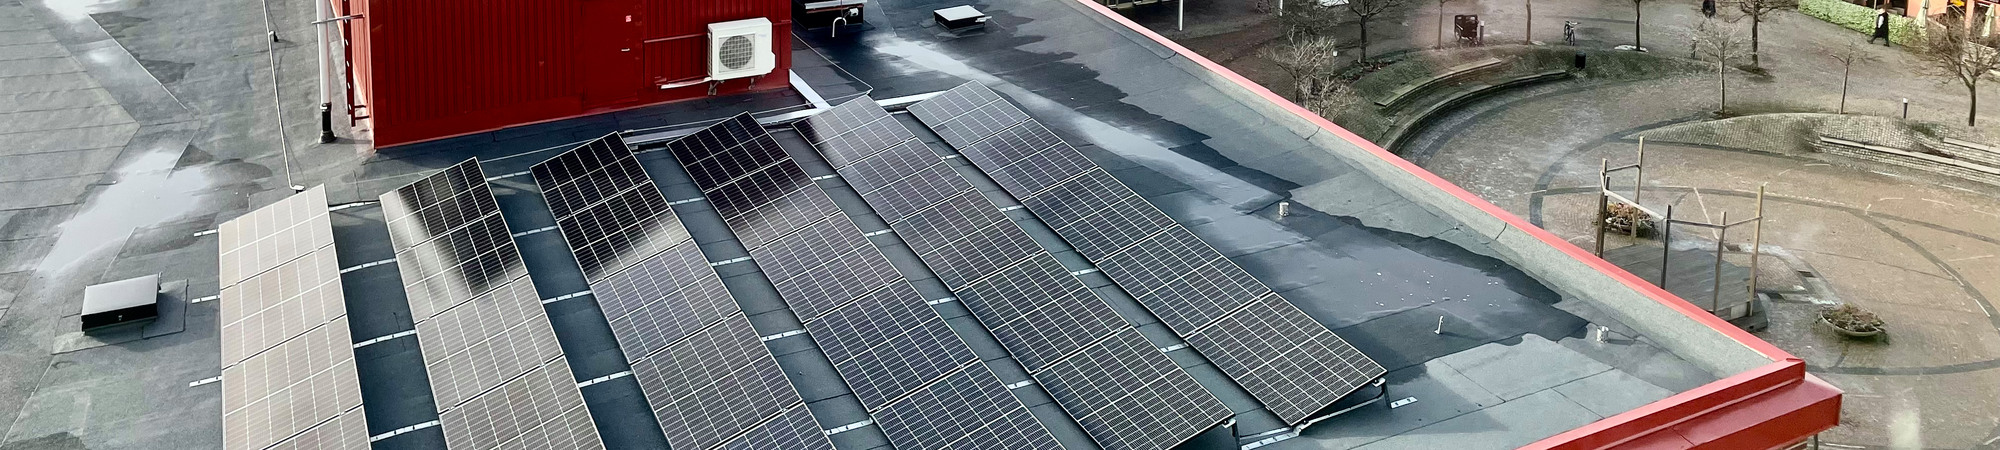 Solceller installerade på ett tak